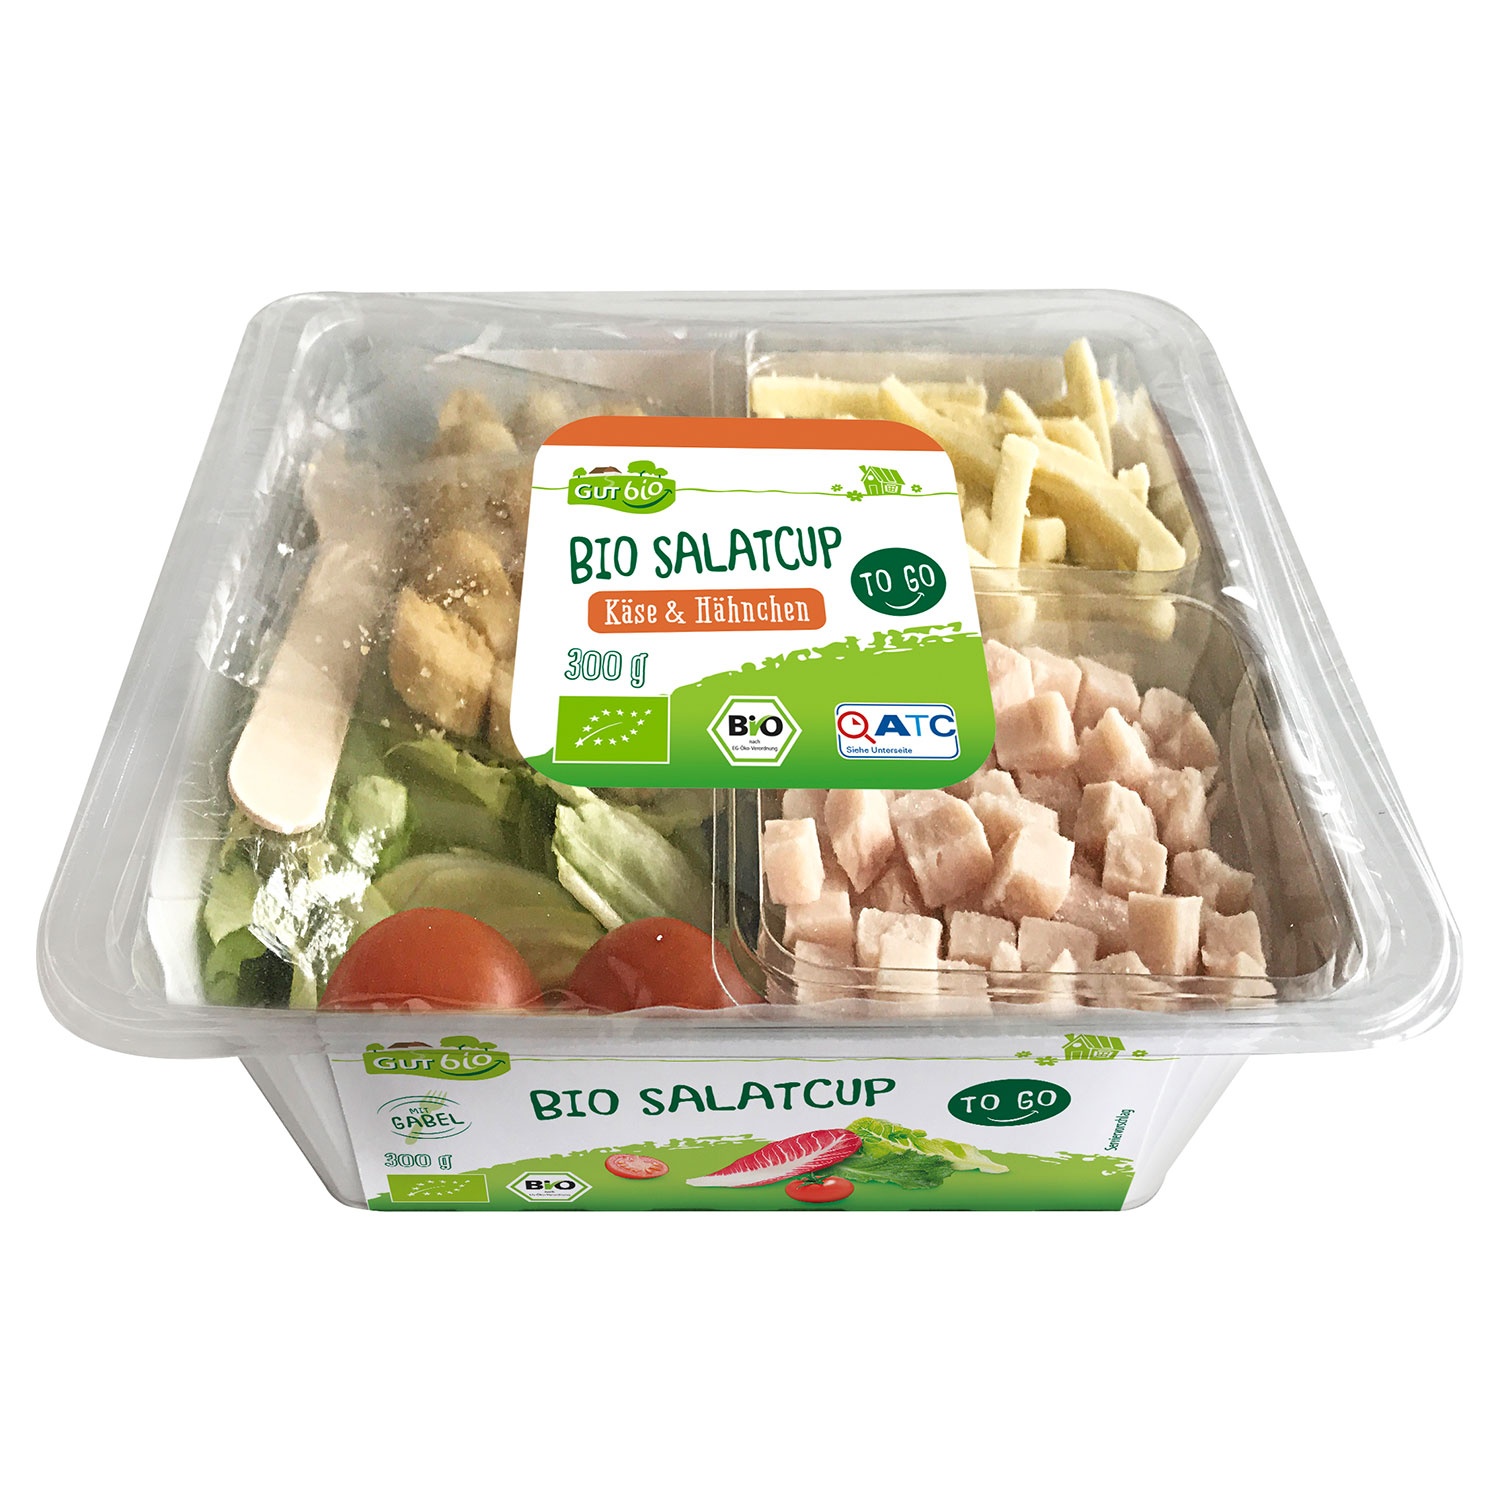 GUT BIO Bio-Salatcup 300 g